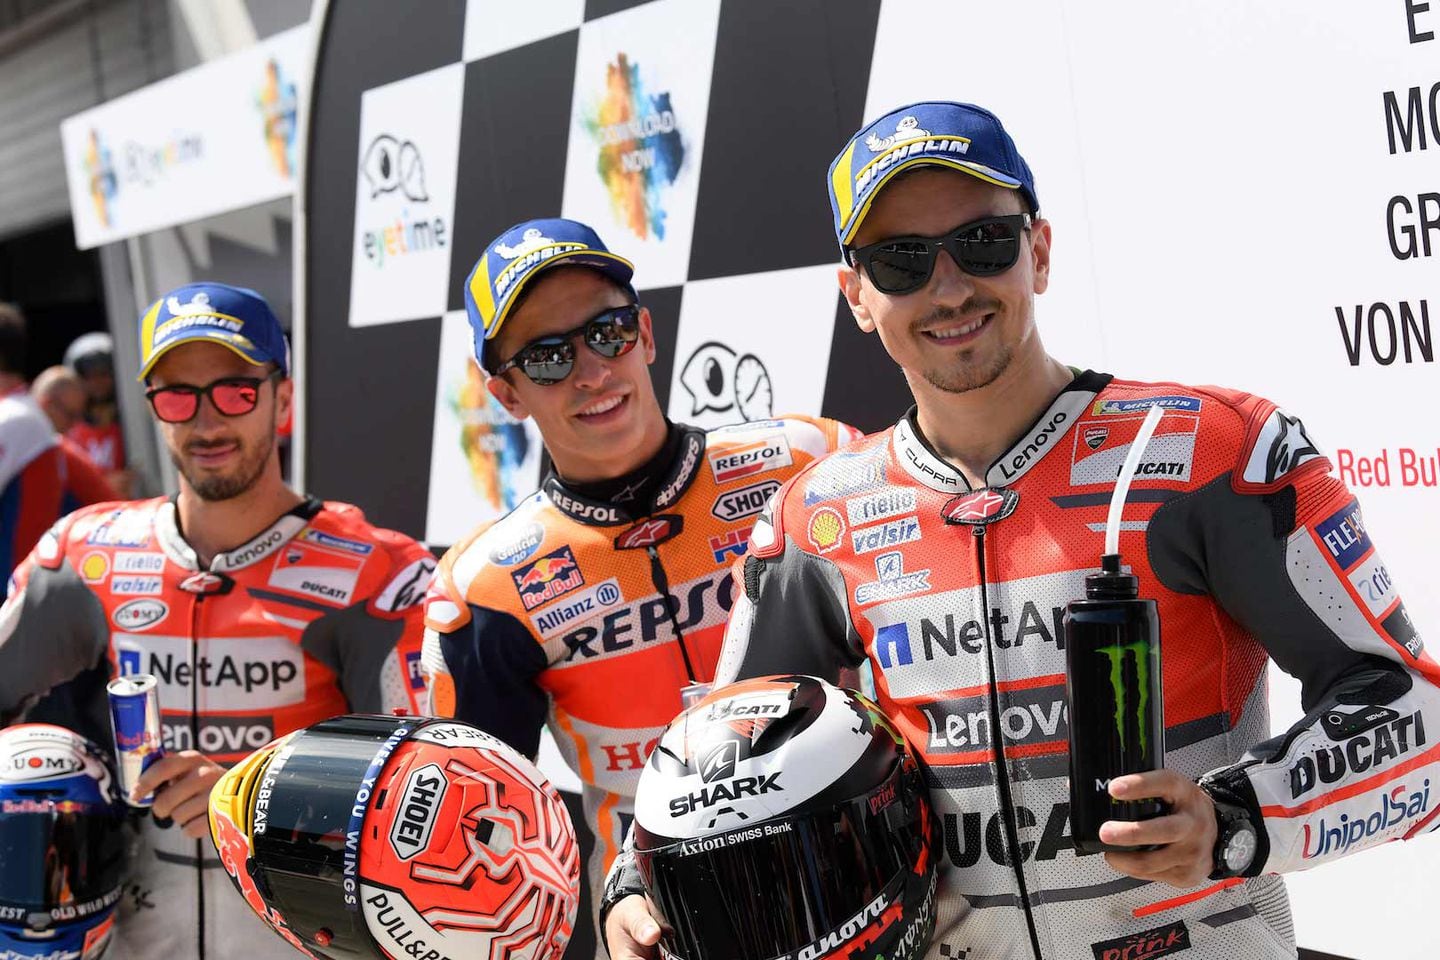 Marc Márquez Wins Pole Position For Austrian MotoGP Race | Cycle World